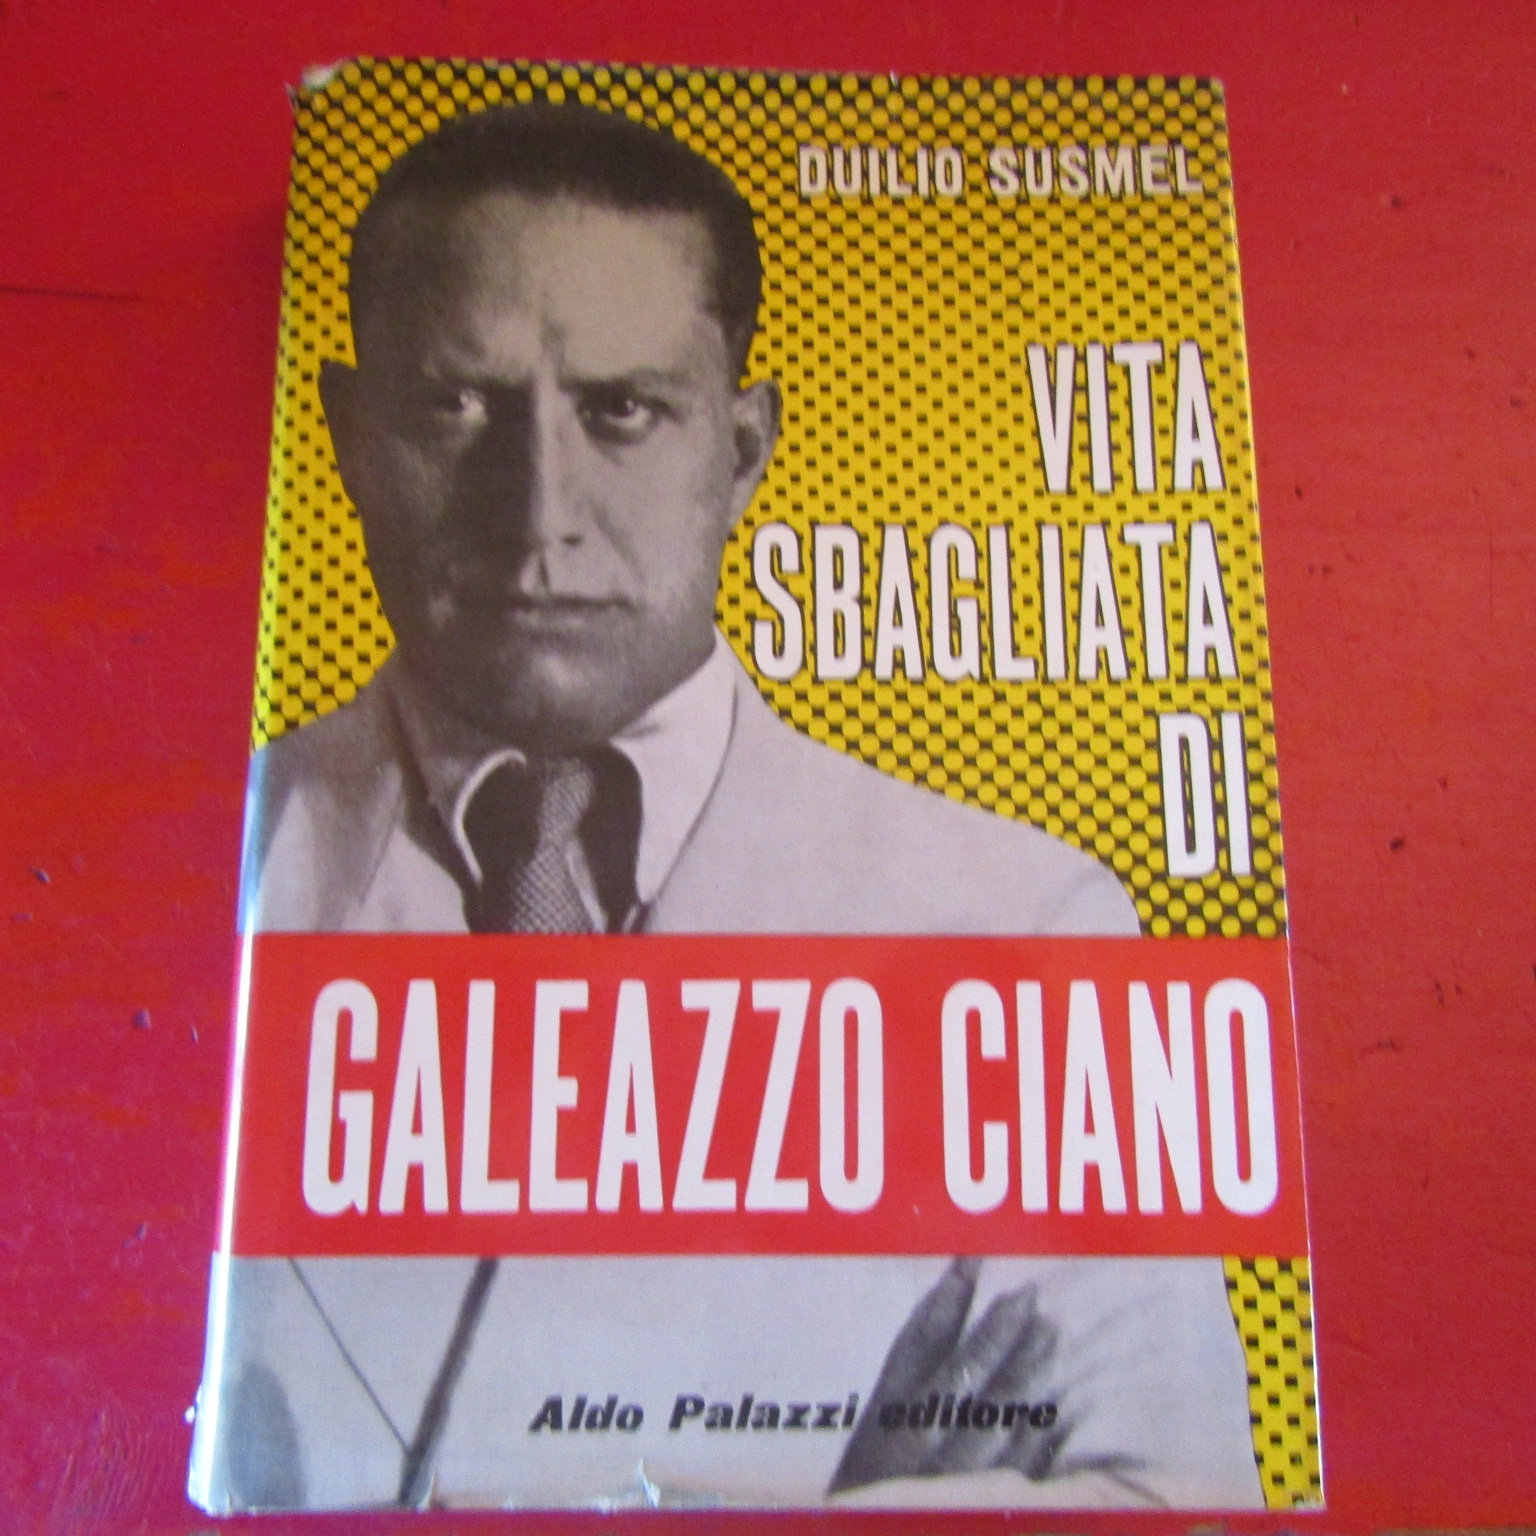 Aldo Palazzi editore 1962 Vita sbagliata di Galeazzo Ciano Duilio Susmel 